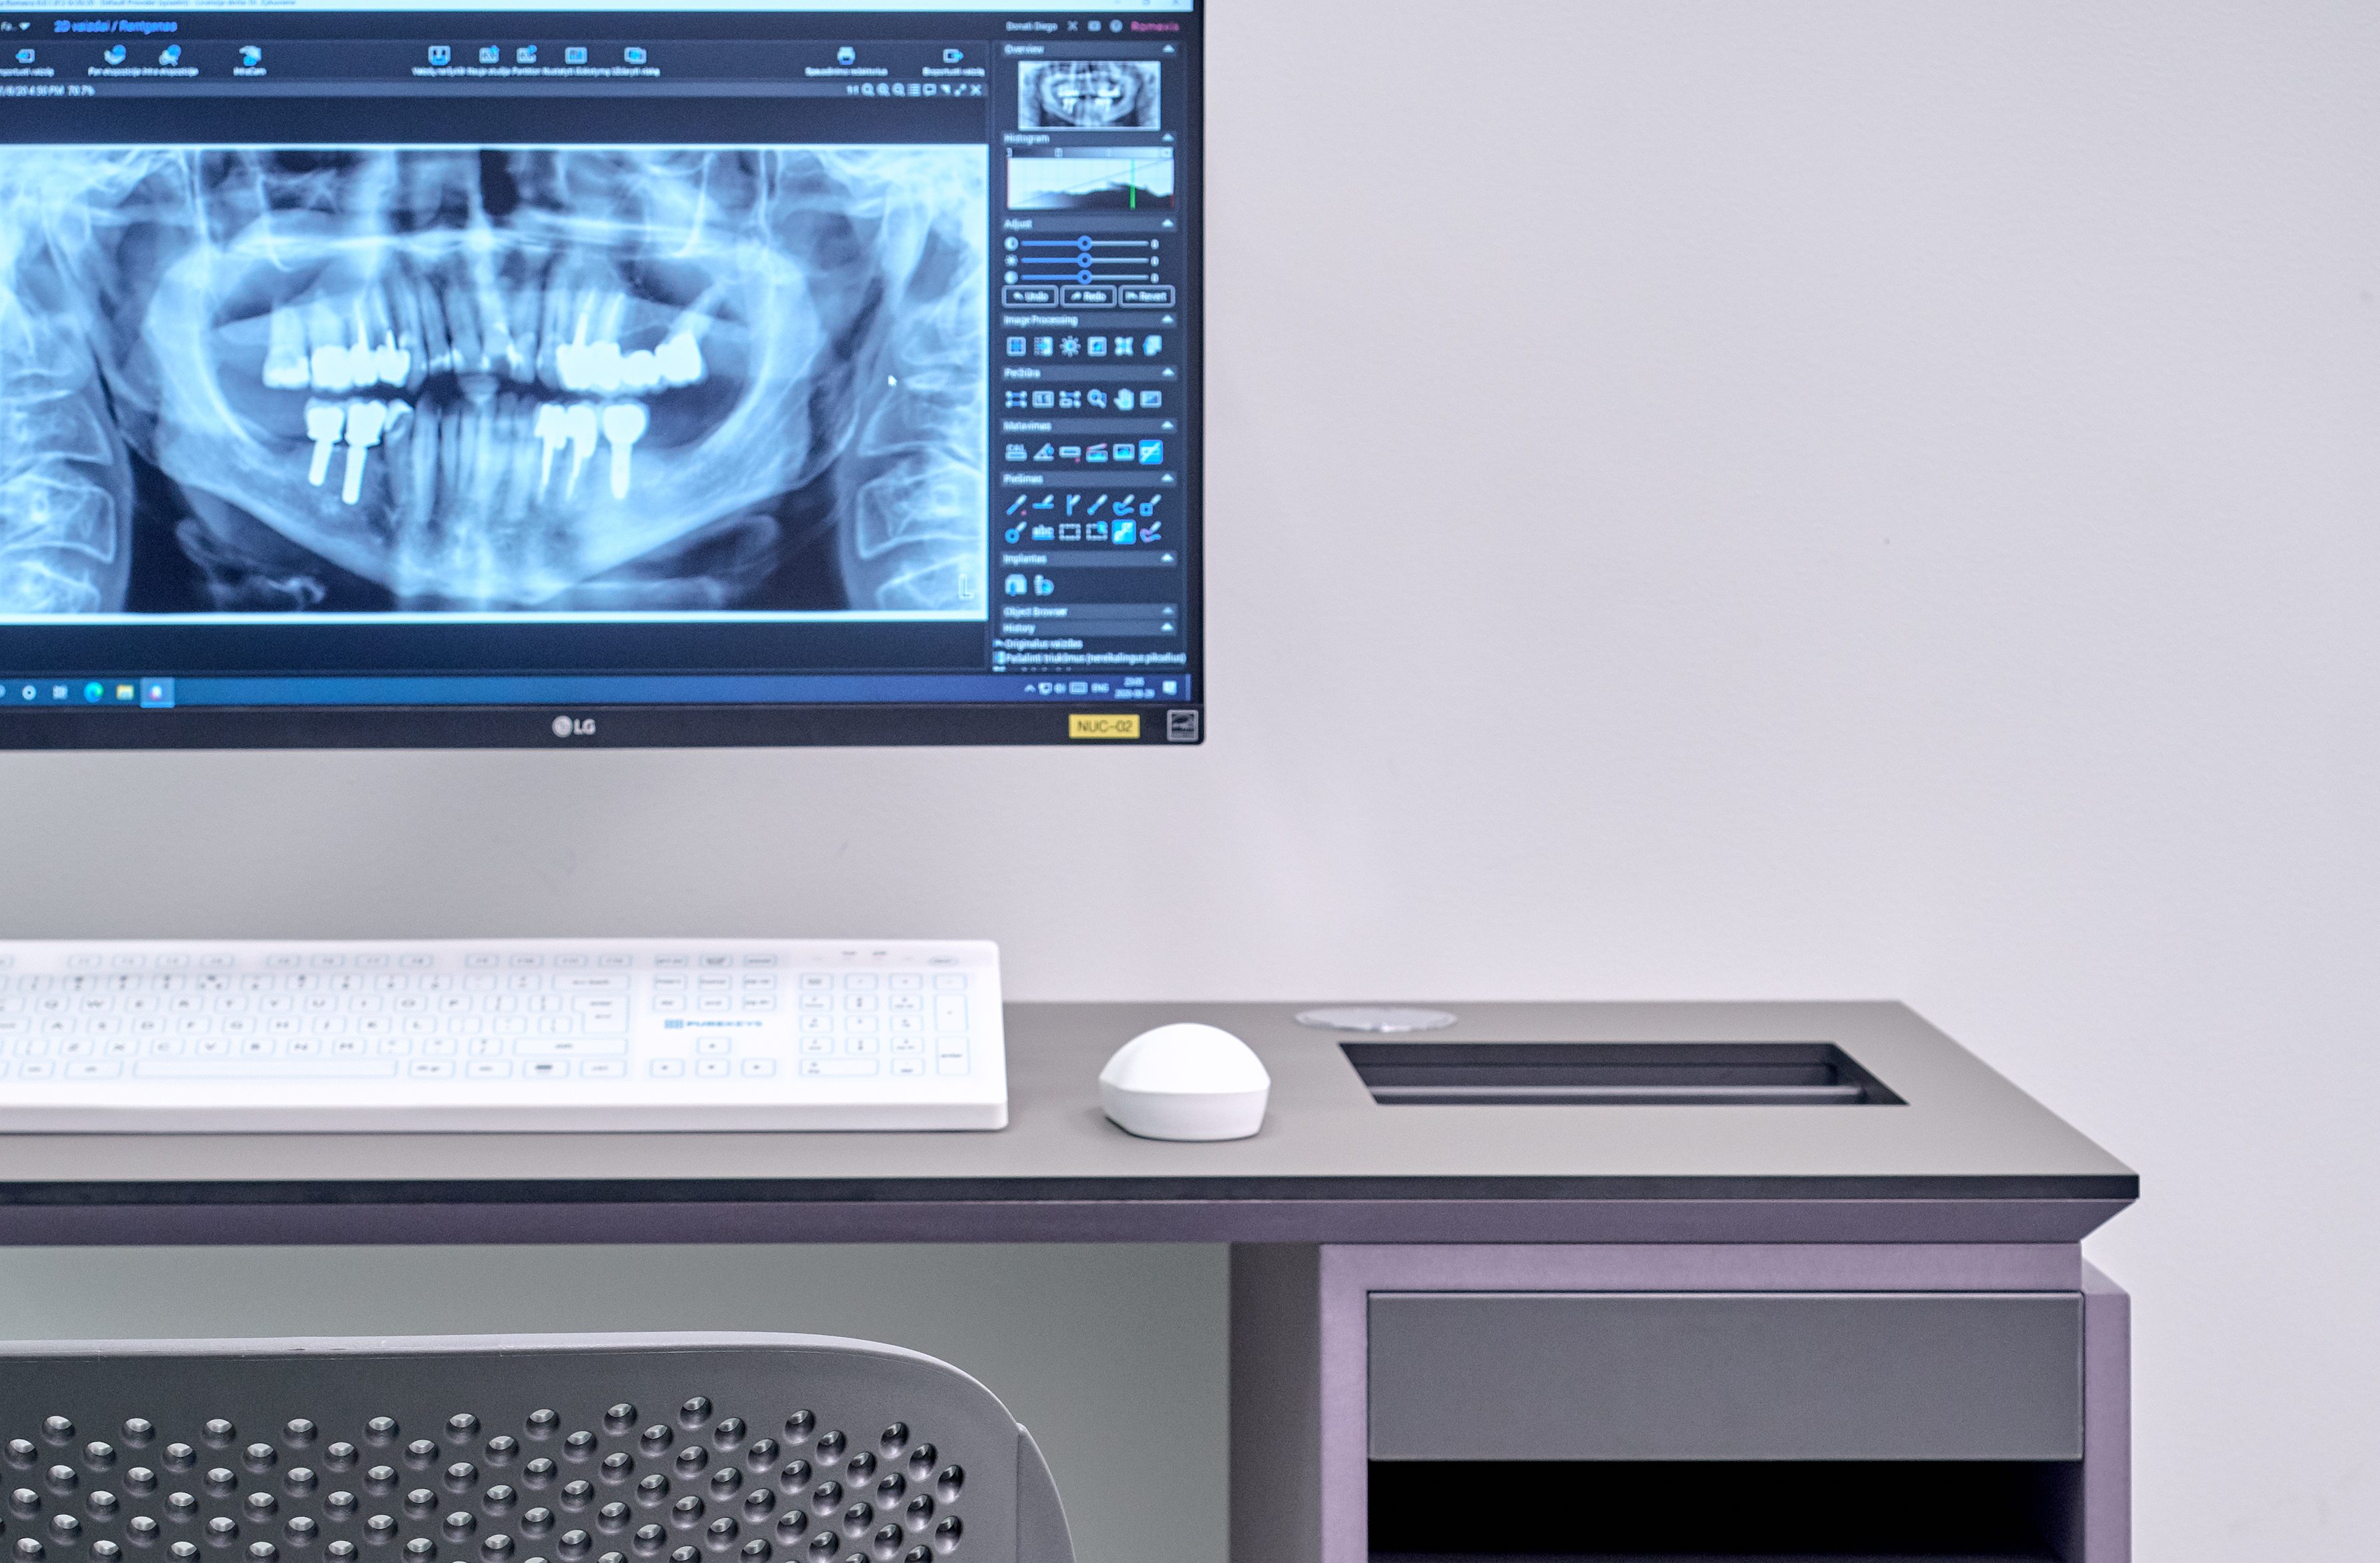 Kompiuterio stalas su kompiuteryje matoma dantų rentgeno nuotrauka